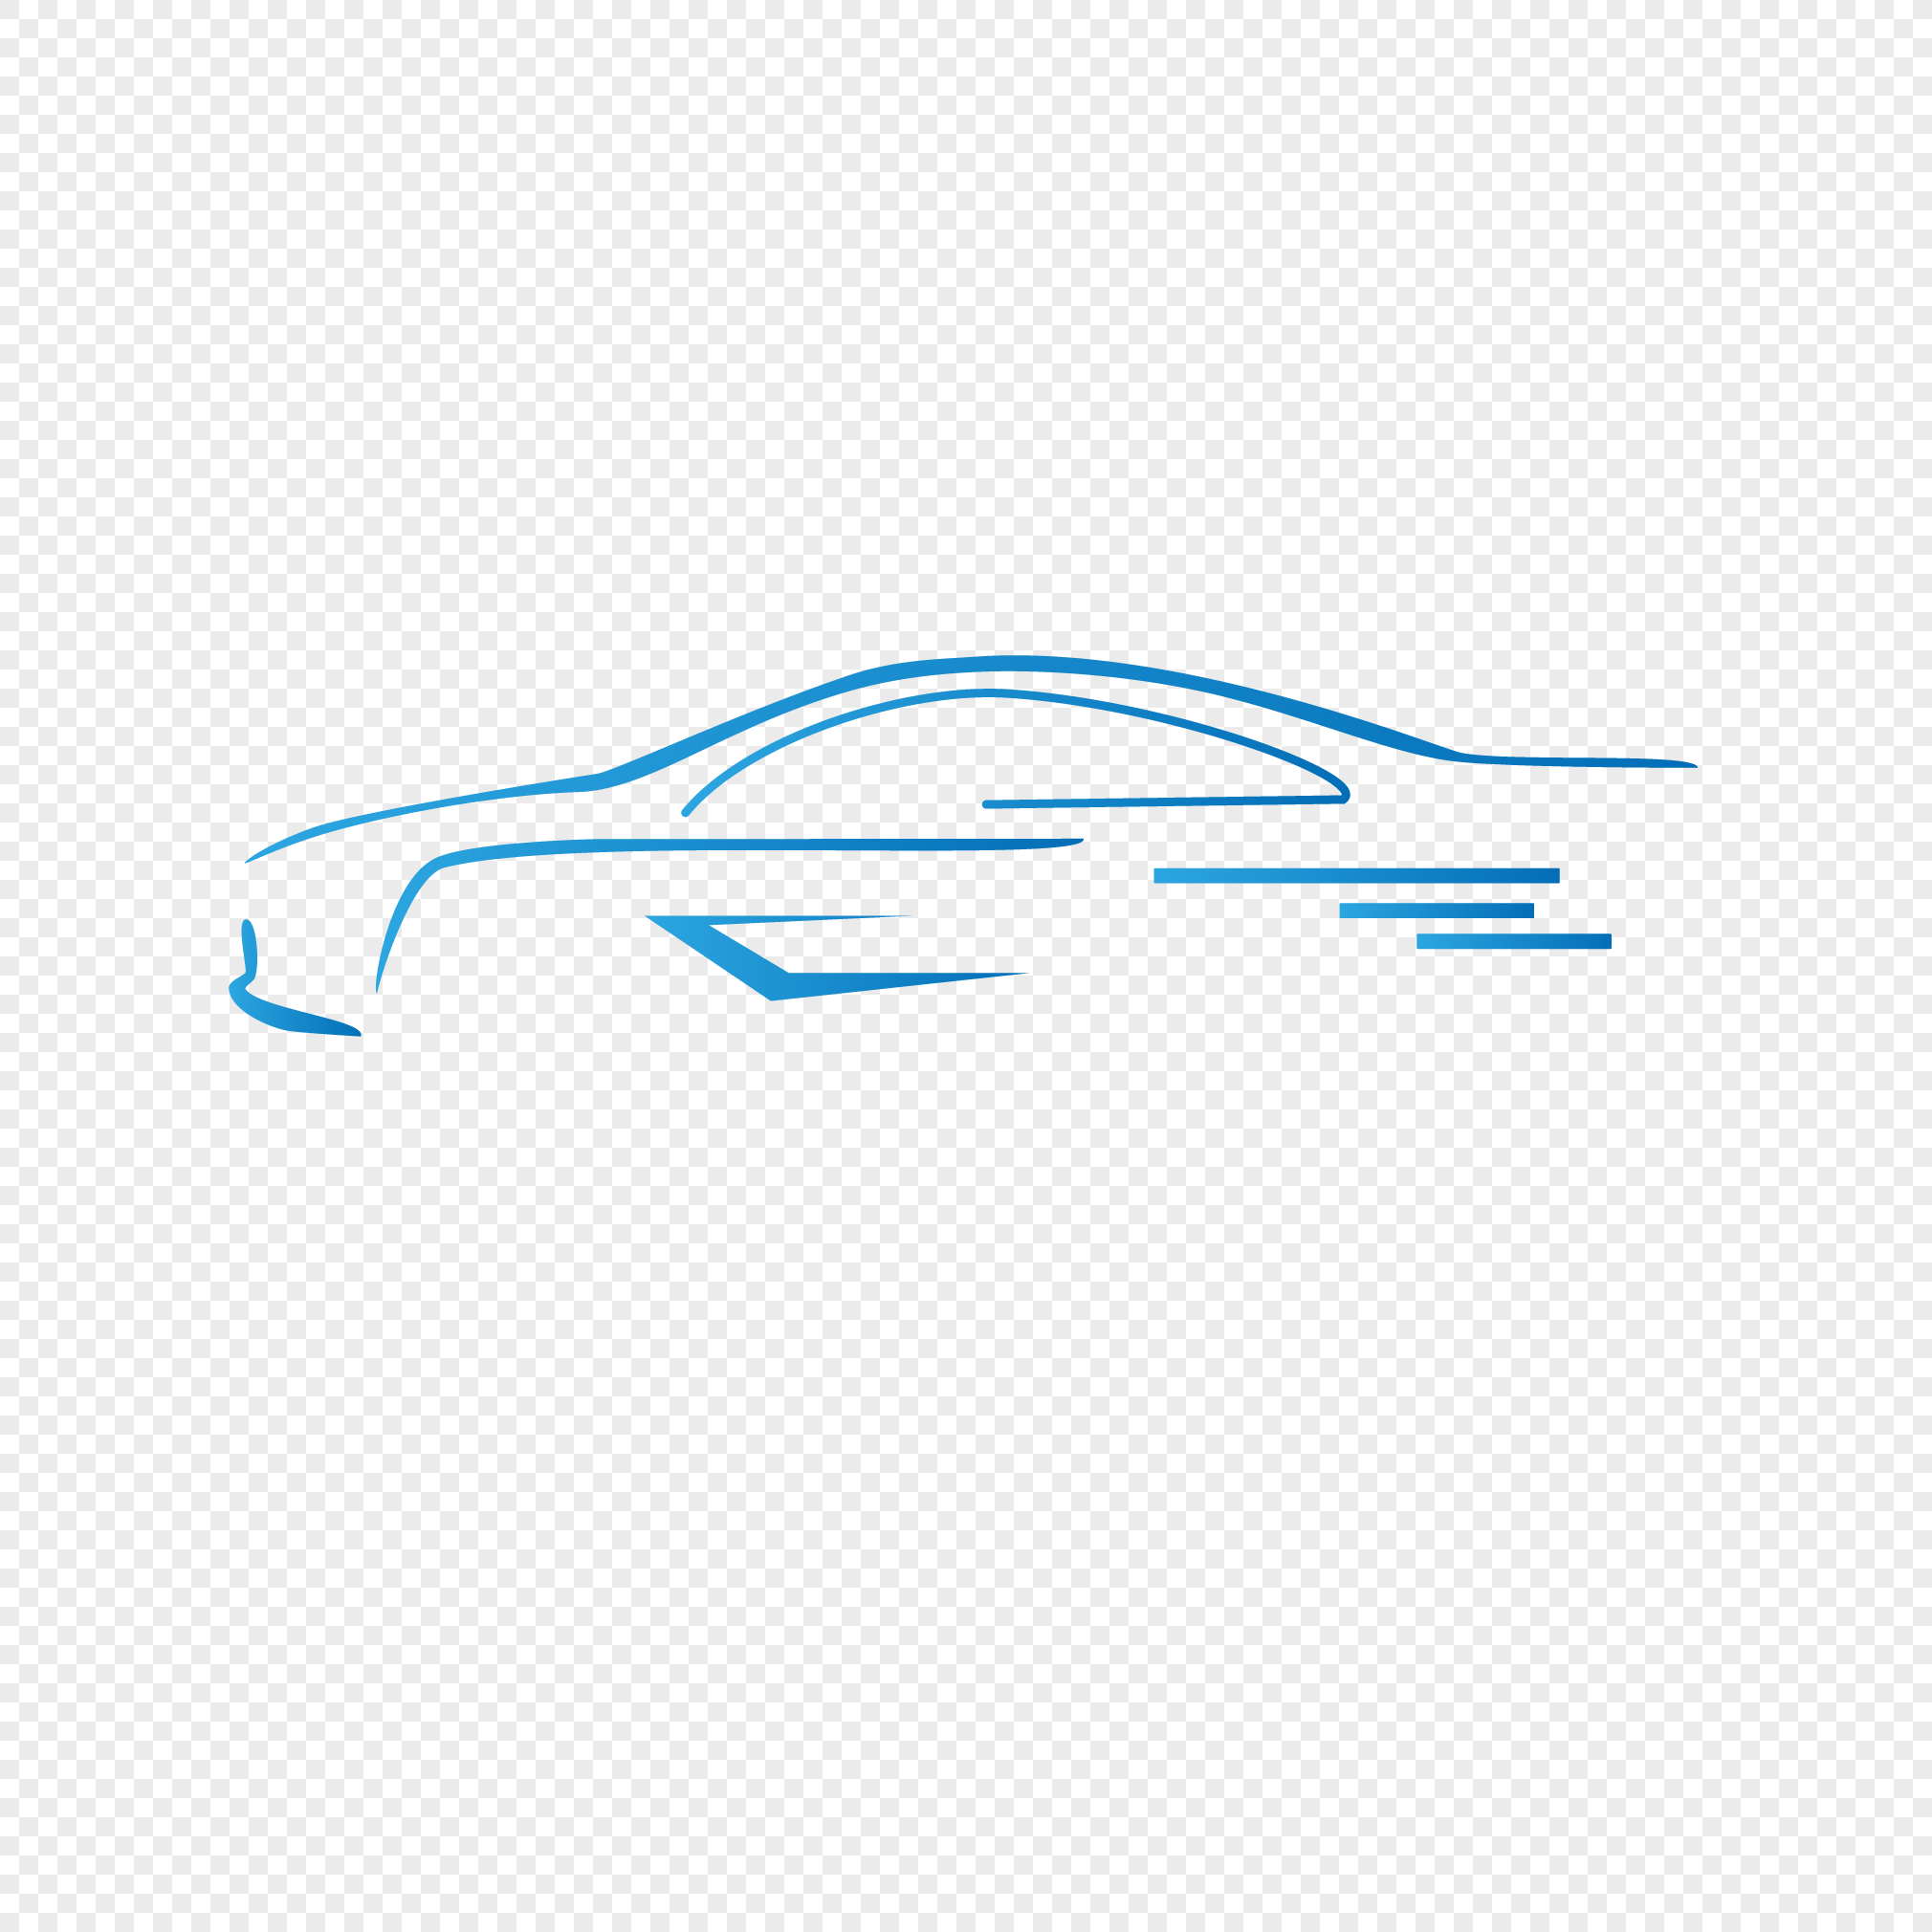 Car traffic logo, traffic pictures, car icon, logo png image free download